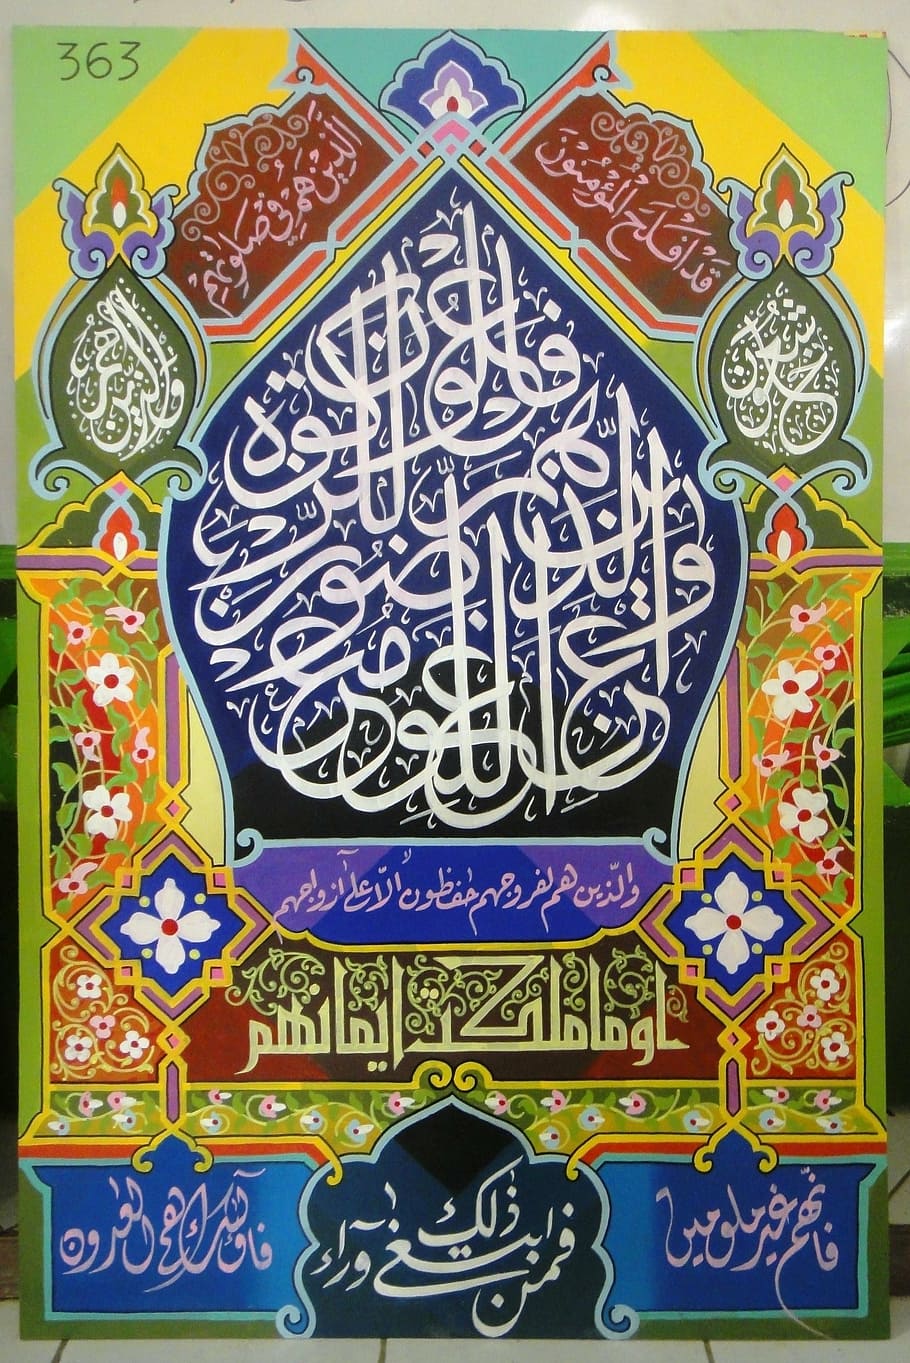 caligrafía, árabe, islam, patrón, arte y artesanía, multicolores, sin gente, creatividad, diseño, arquitectura